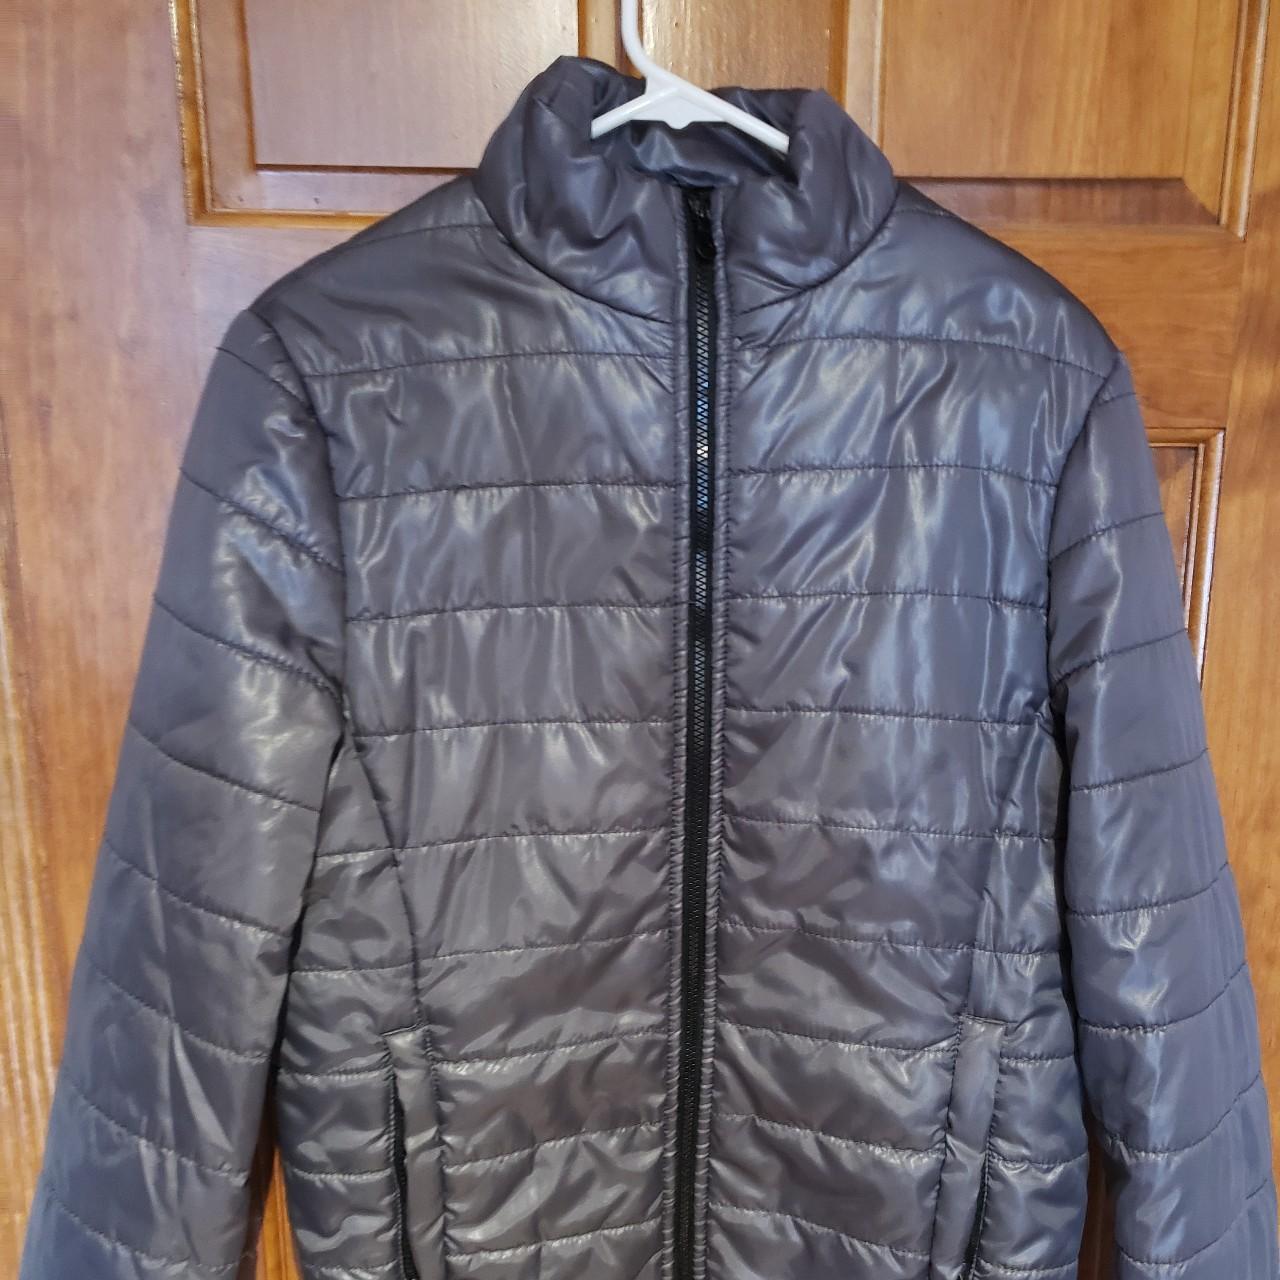 Aeropostale gray puffer jacket y2k esque - Depop